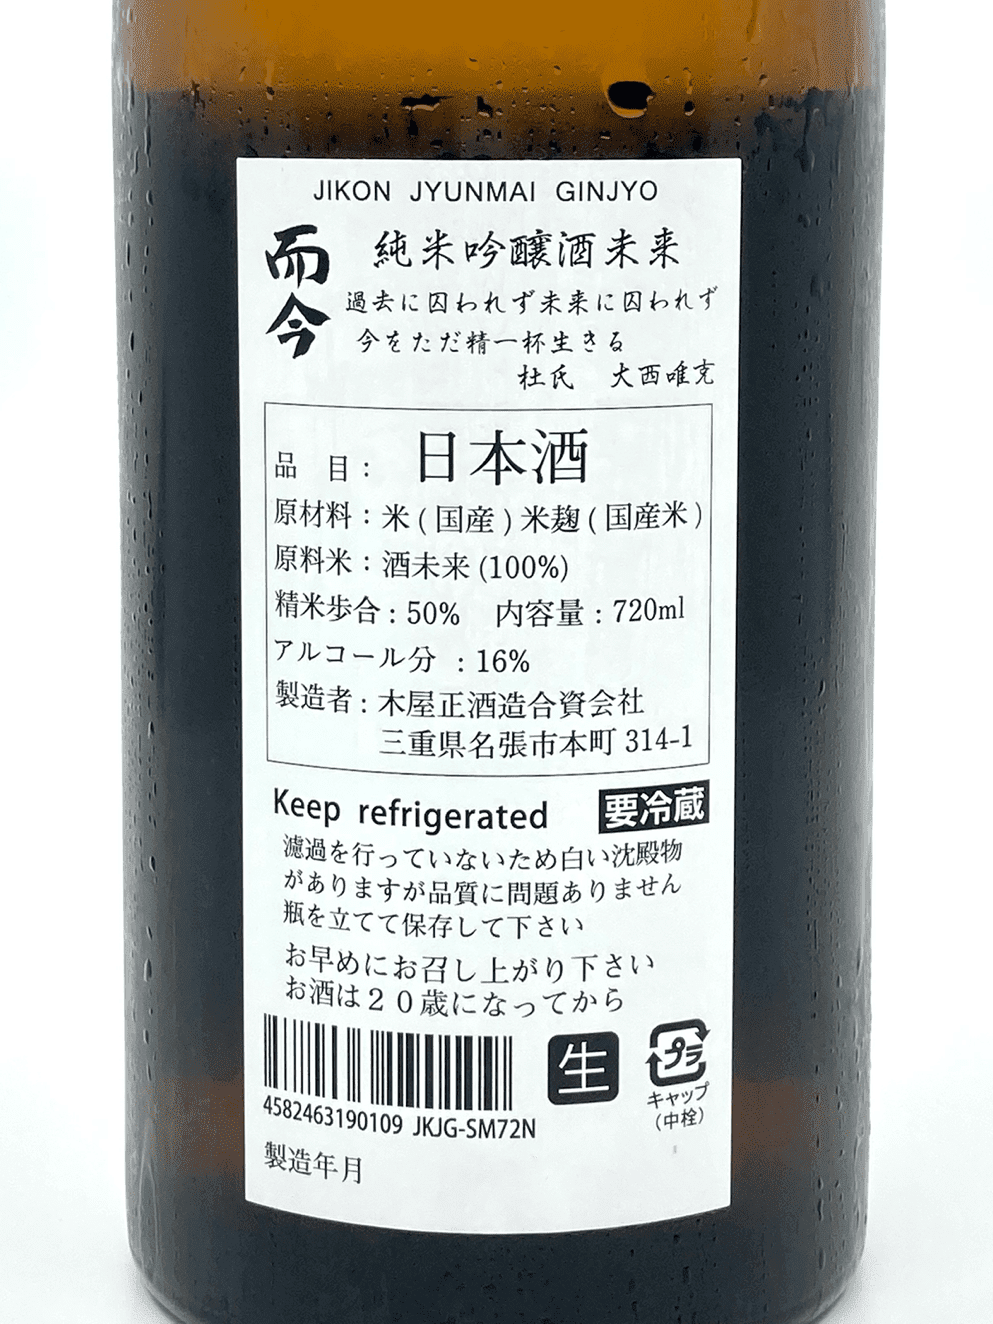 而今酒未來純米吟釀無濾過生酒720ml| 酒蛙Sakewa | 日本酒專門店